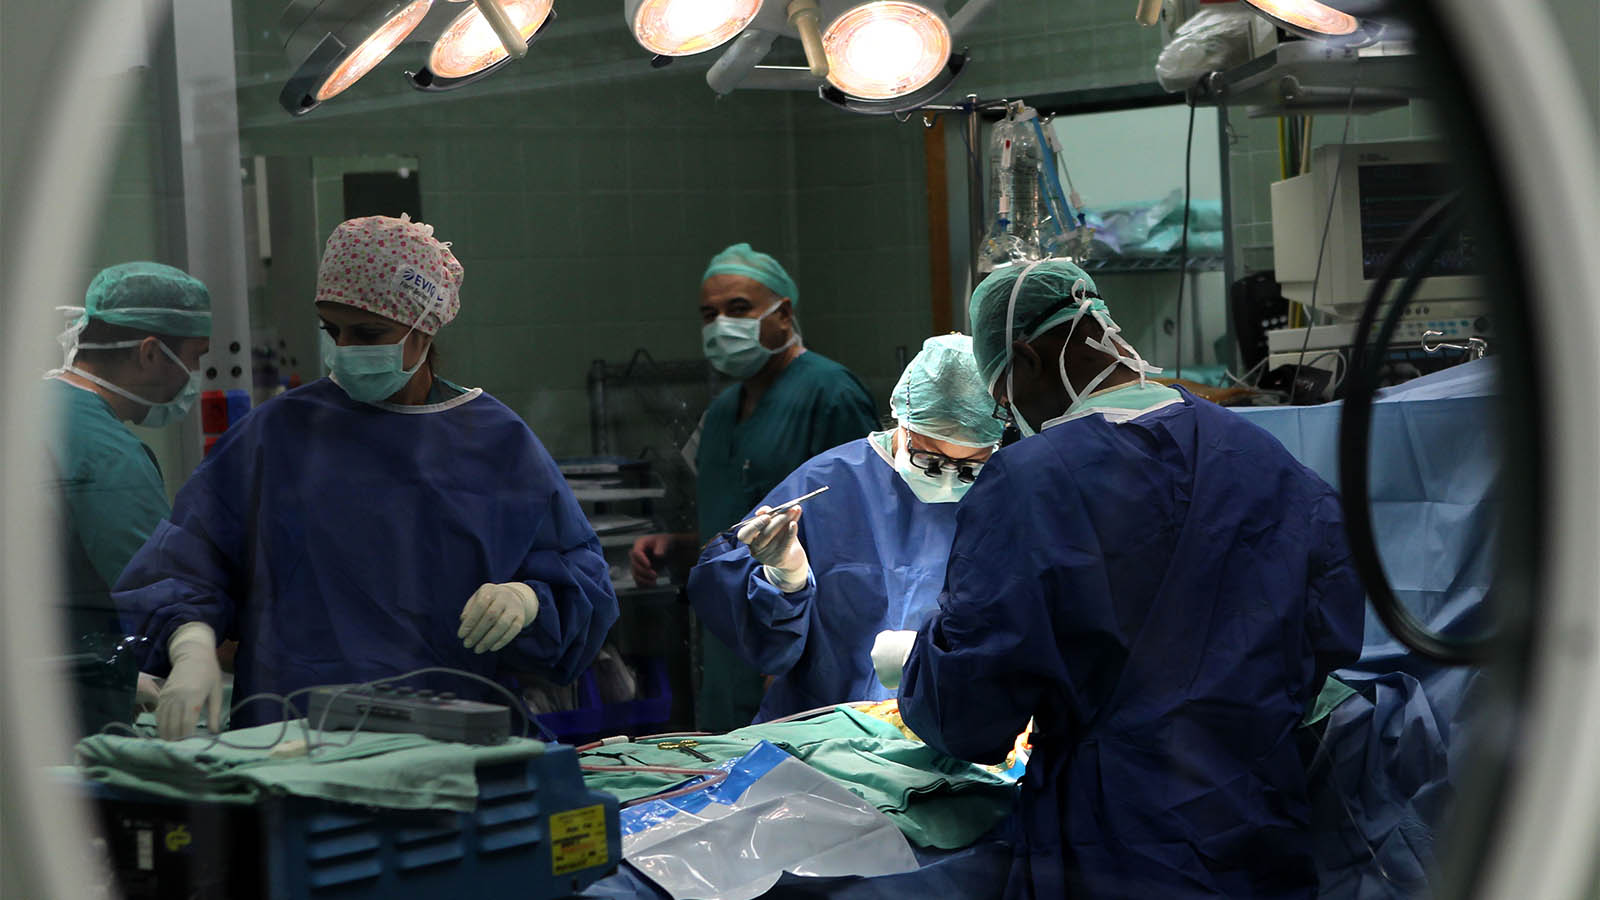 أطباء في غرفة عمليات في إسرائيل. للمتصورين لا علاقة مع المقالة. (تصوير: ناتي شوحاط / فلاش 90)